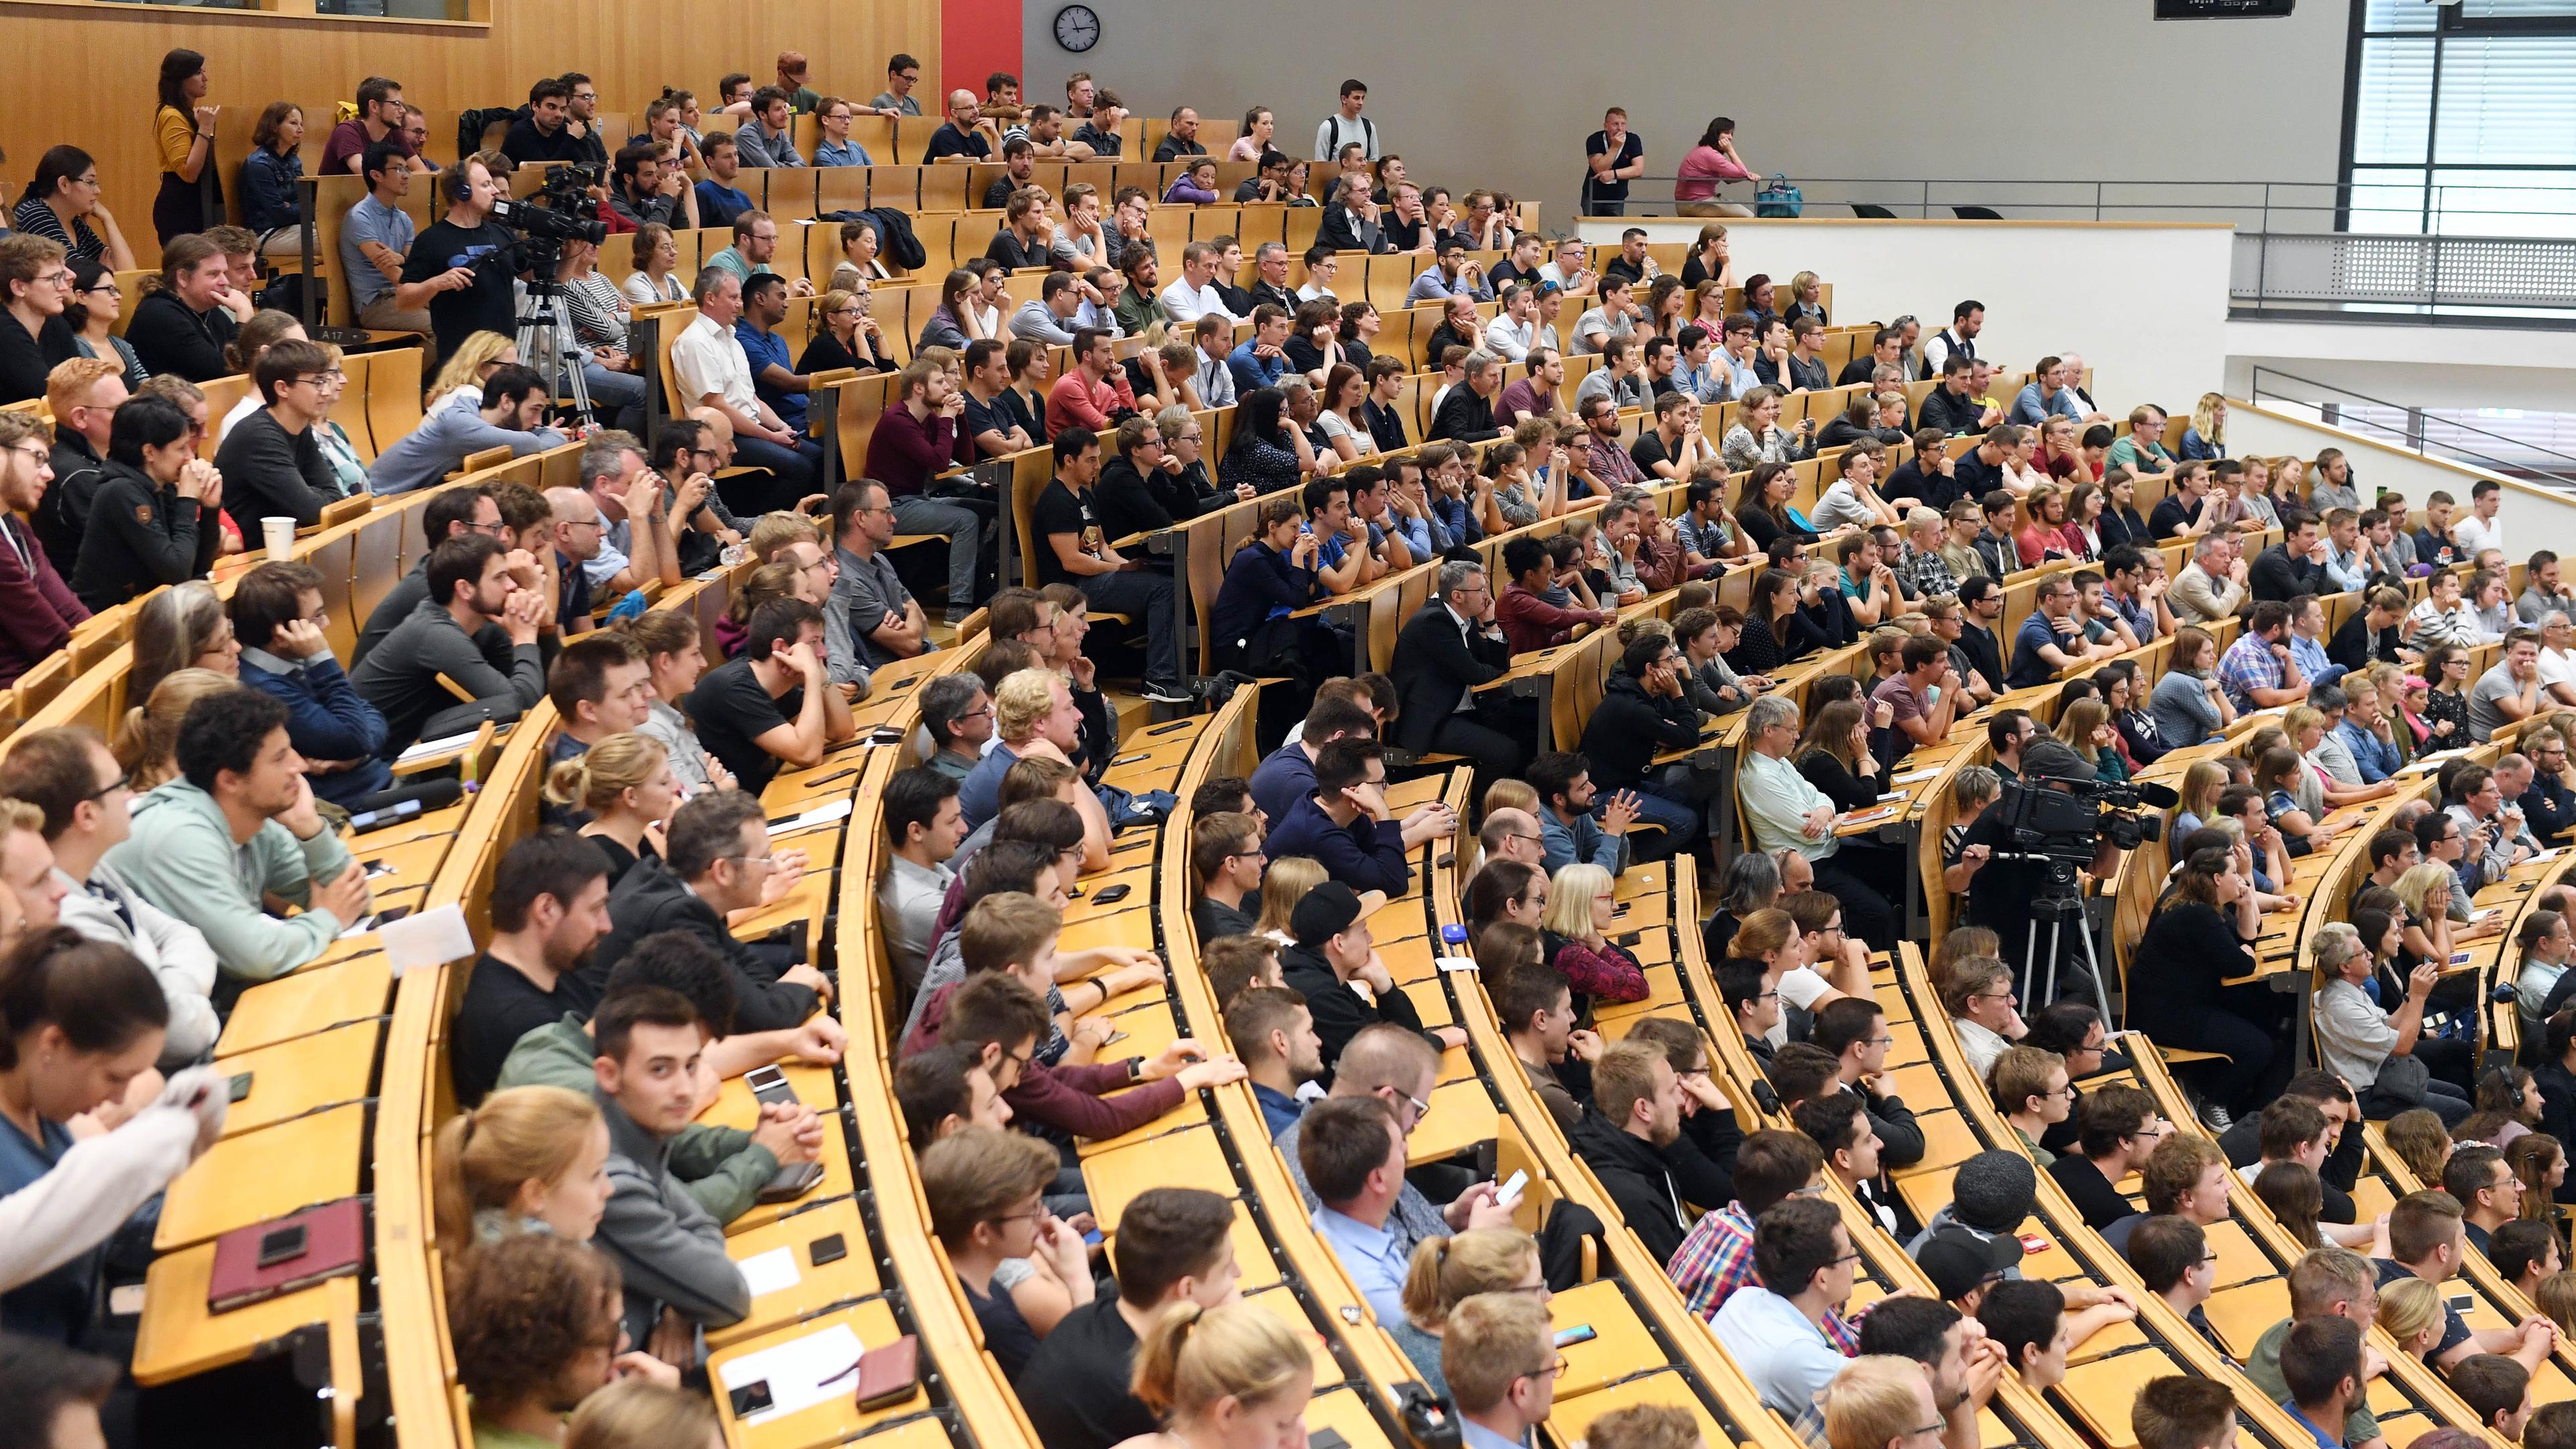 Archiv: Studenten im Hörsaal, aufgenommen am 12.07.2019 in Karlsruhe